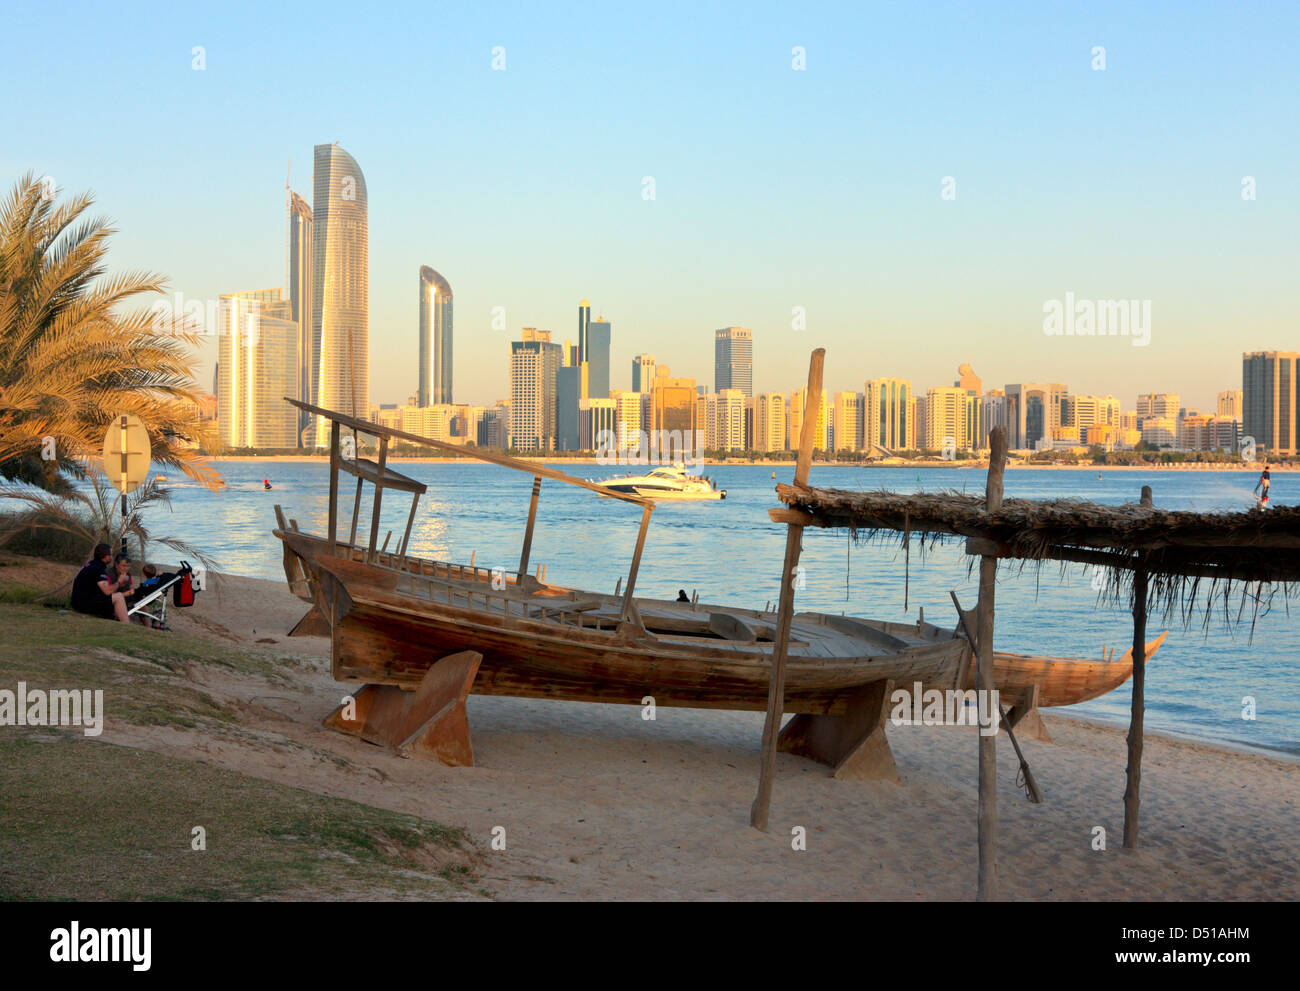 Sambuco tradizionale sulla spiaggia, alti edifici moderni in background, Abu Dhabi Heritage Village, Emirati Arabi Uniti Foto Stock